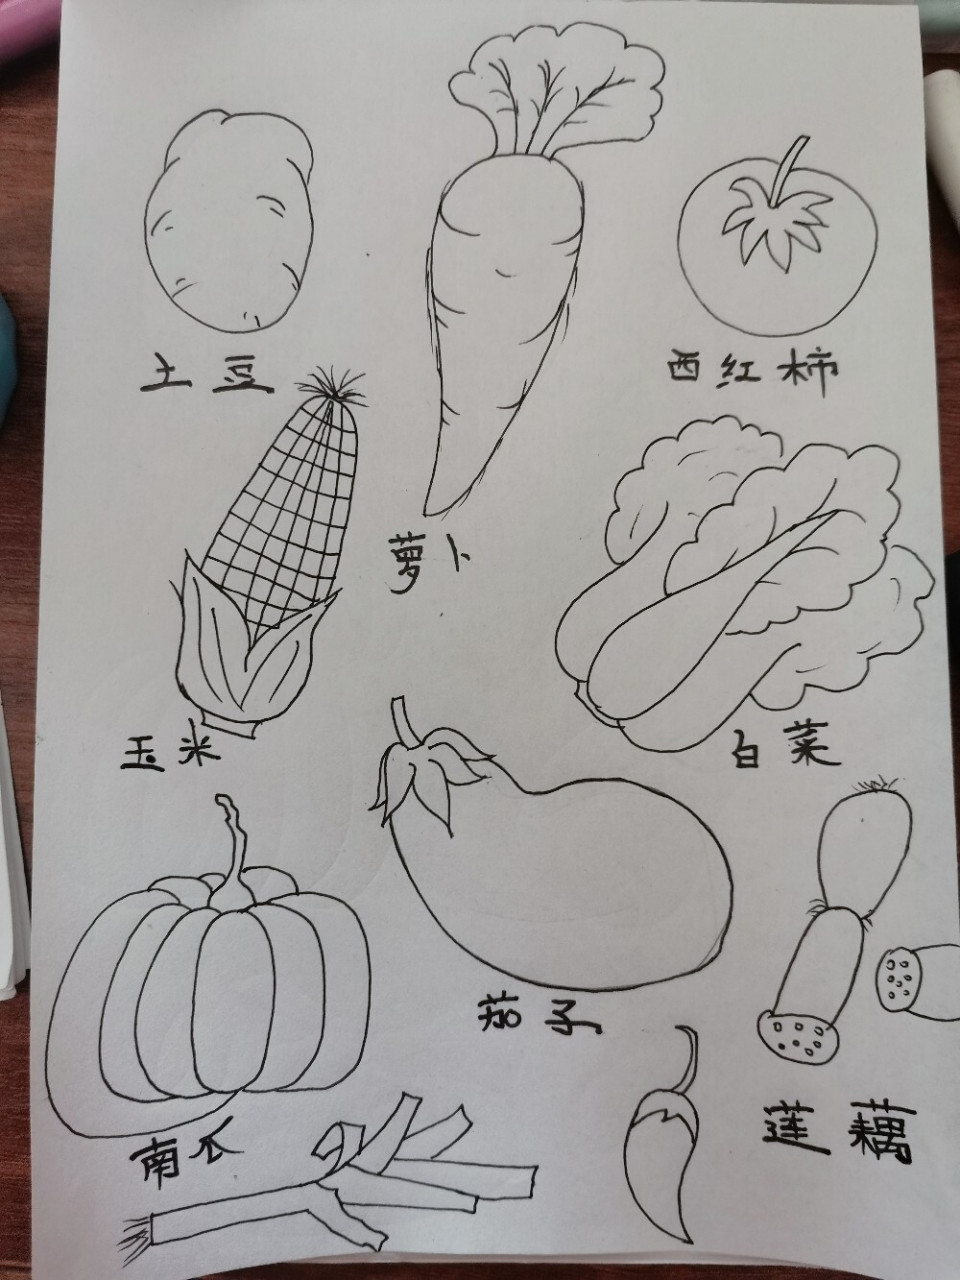 水彩手绘,蔬菜简笔画 萝卜青菜,各有所爱(73°з°)